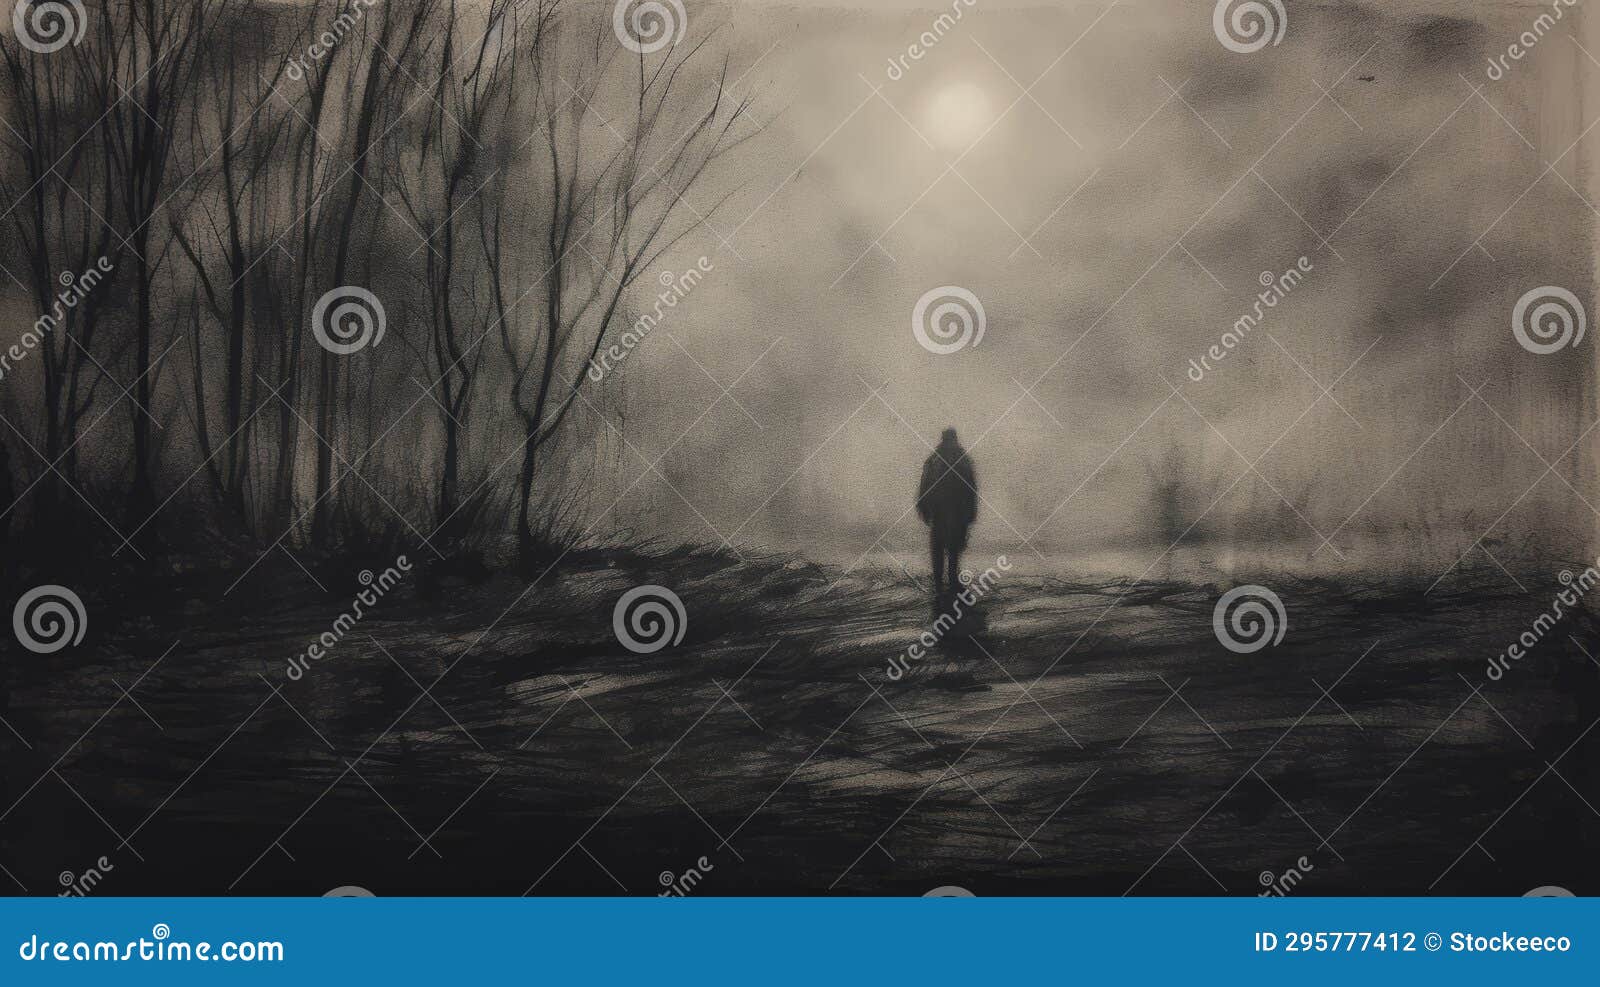 Moody Tonalist Drawing: Lone Figure Wandering in Misty Night Stock ...